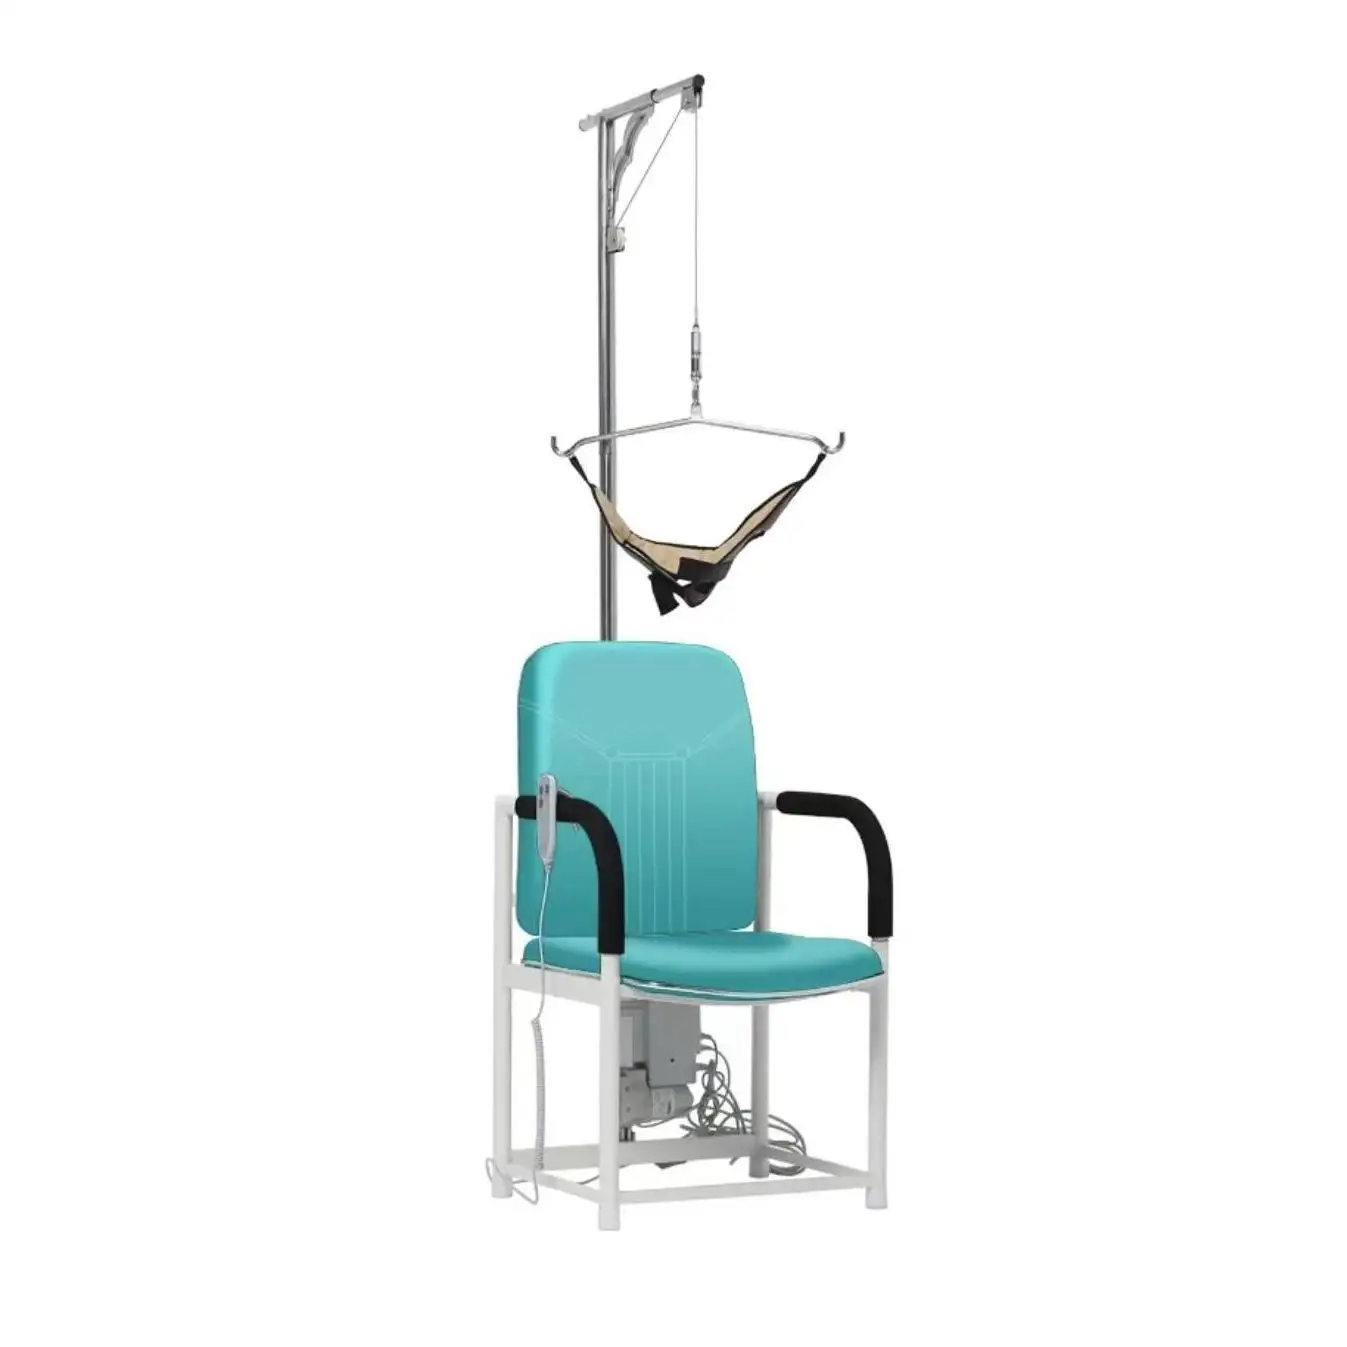 Commercio all'ingrosso della fabbrica di alta qualità sedia elettrica di trazione forza di retrazione sedia medica elettrica